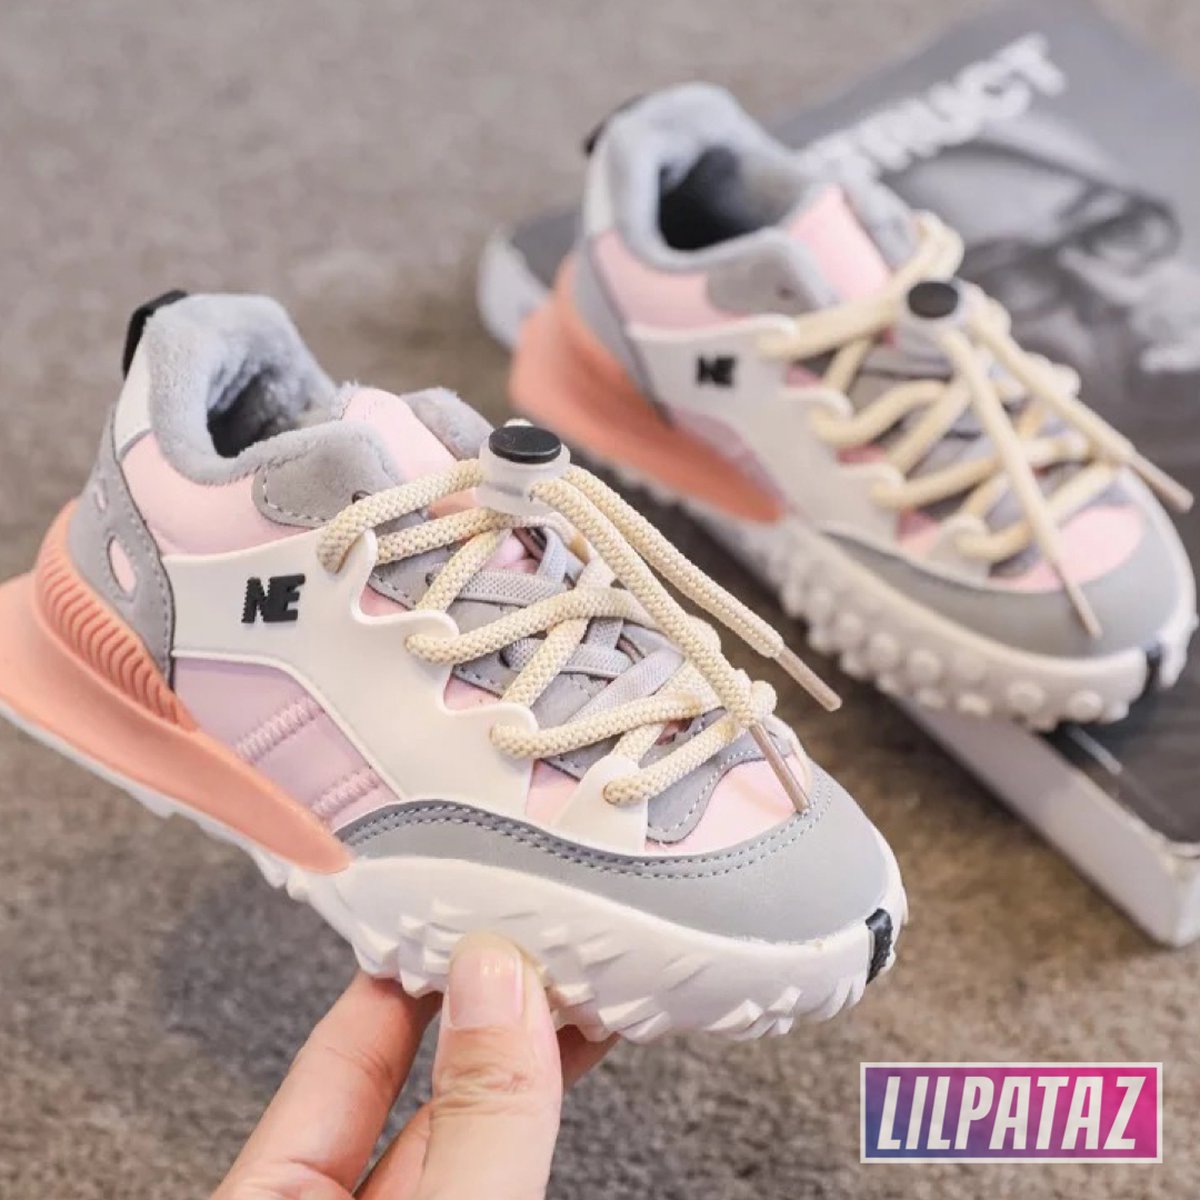 LilPataz Moon Spikes - Lage sneakers - meisjes kids kinderen - Roze Wit - Maat 23